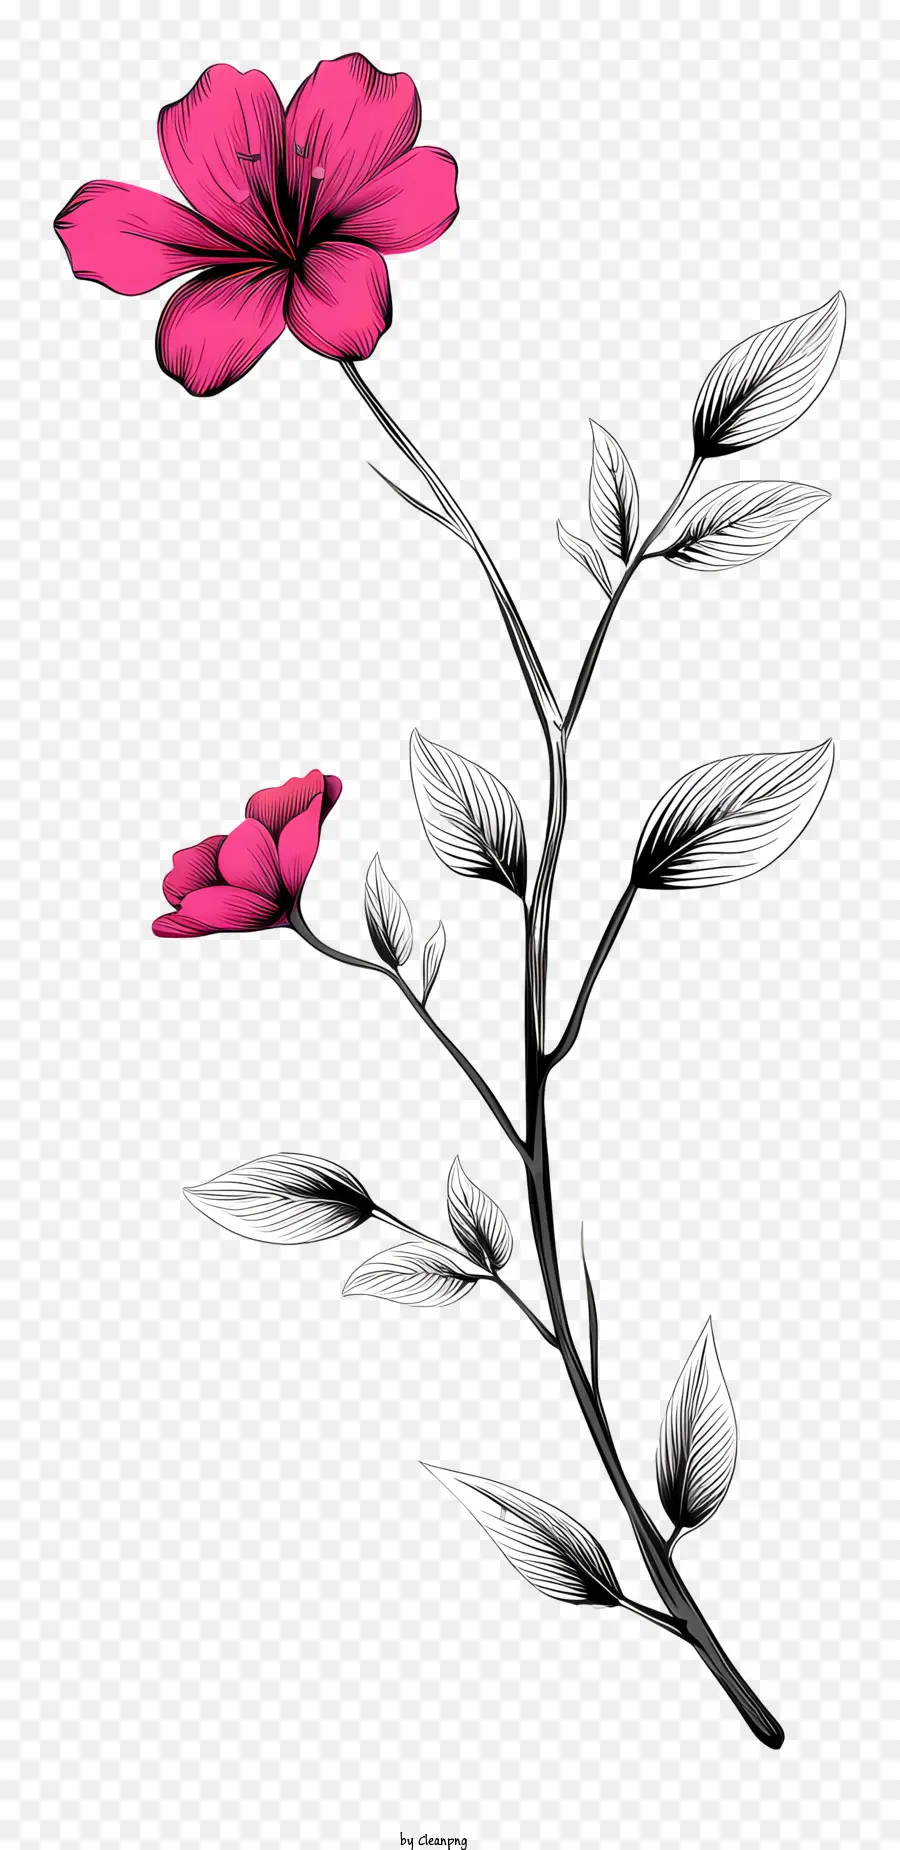 fiore rosa - Fotografia in bianco e nero di fiore rosa